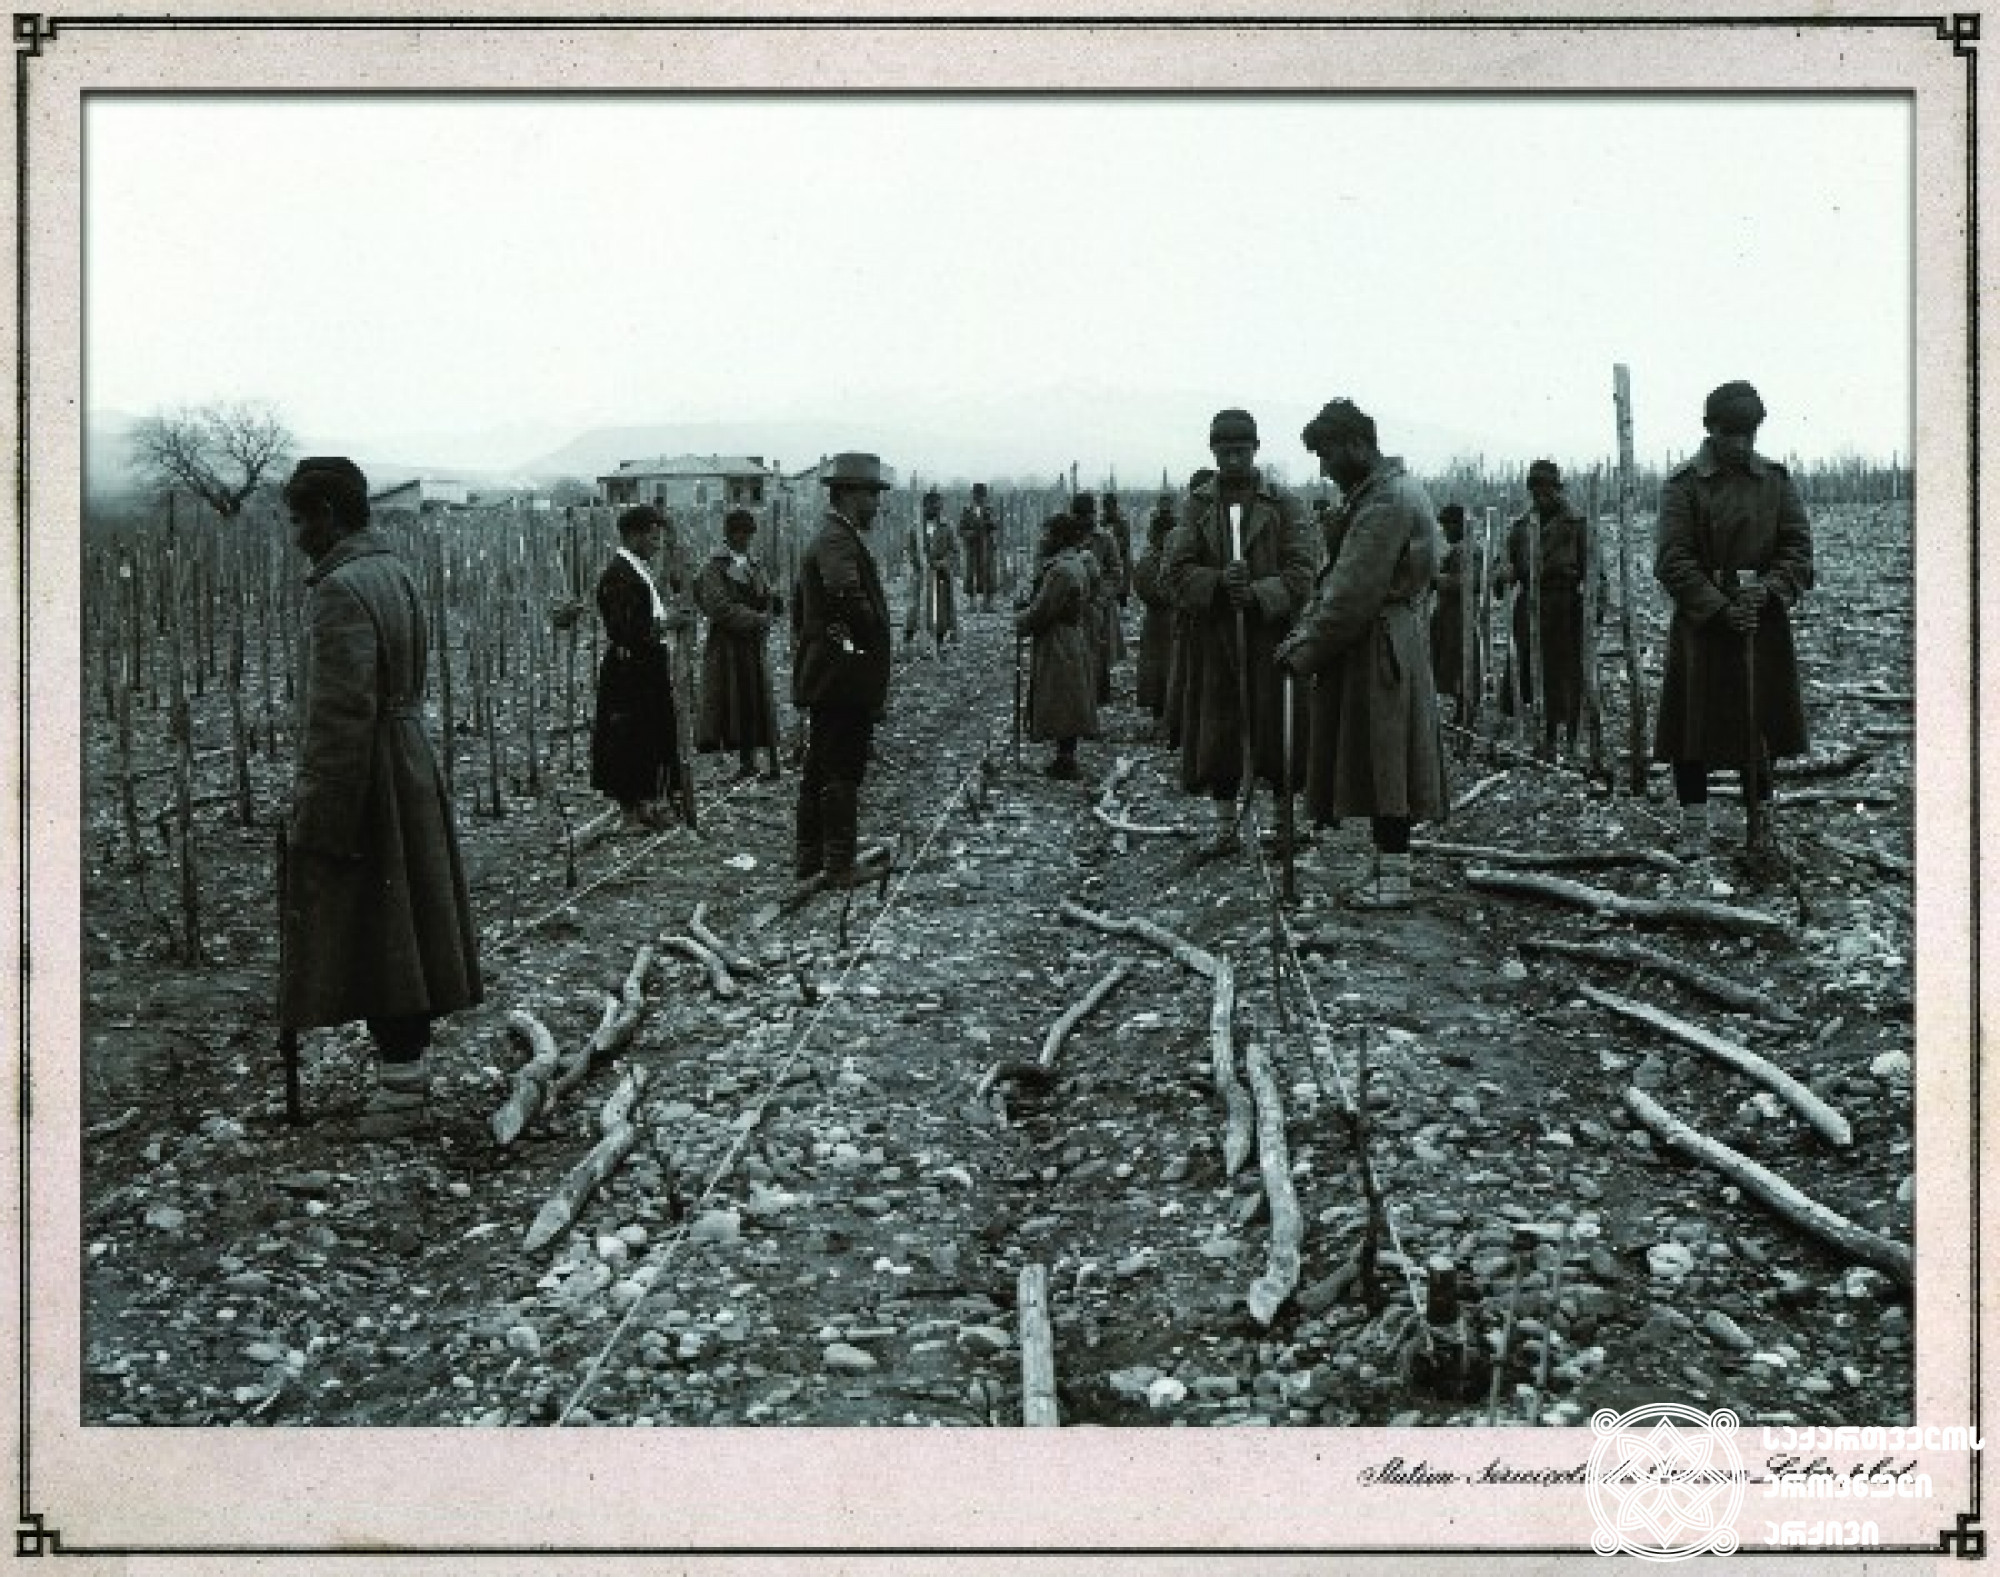 სარების დამაგრება ვაზის გასაშენებლად <br>
ფოტო: კონსტანტინე ზანისი <br>
კახეთი, 1900-1905 წლები <br>
Investing poles for vine cultivation<br>
Photo by Konstantin Zanis
Kakheti, 1900-1905 <br>